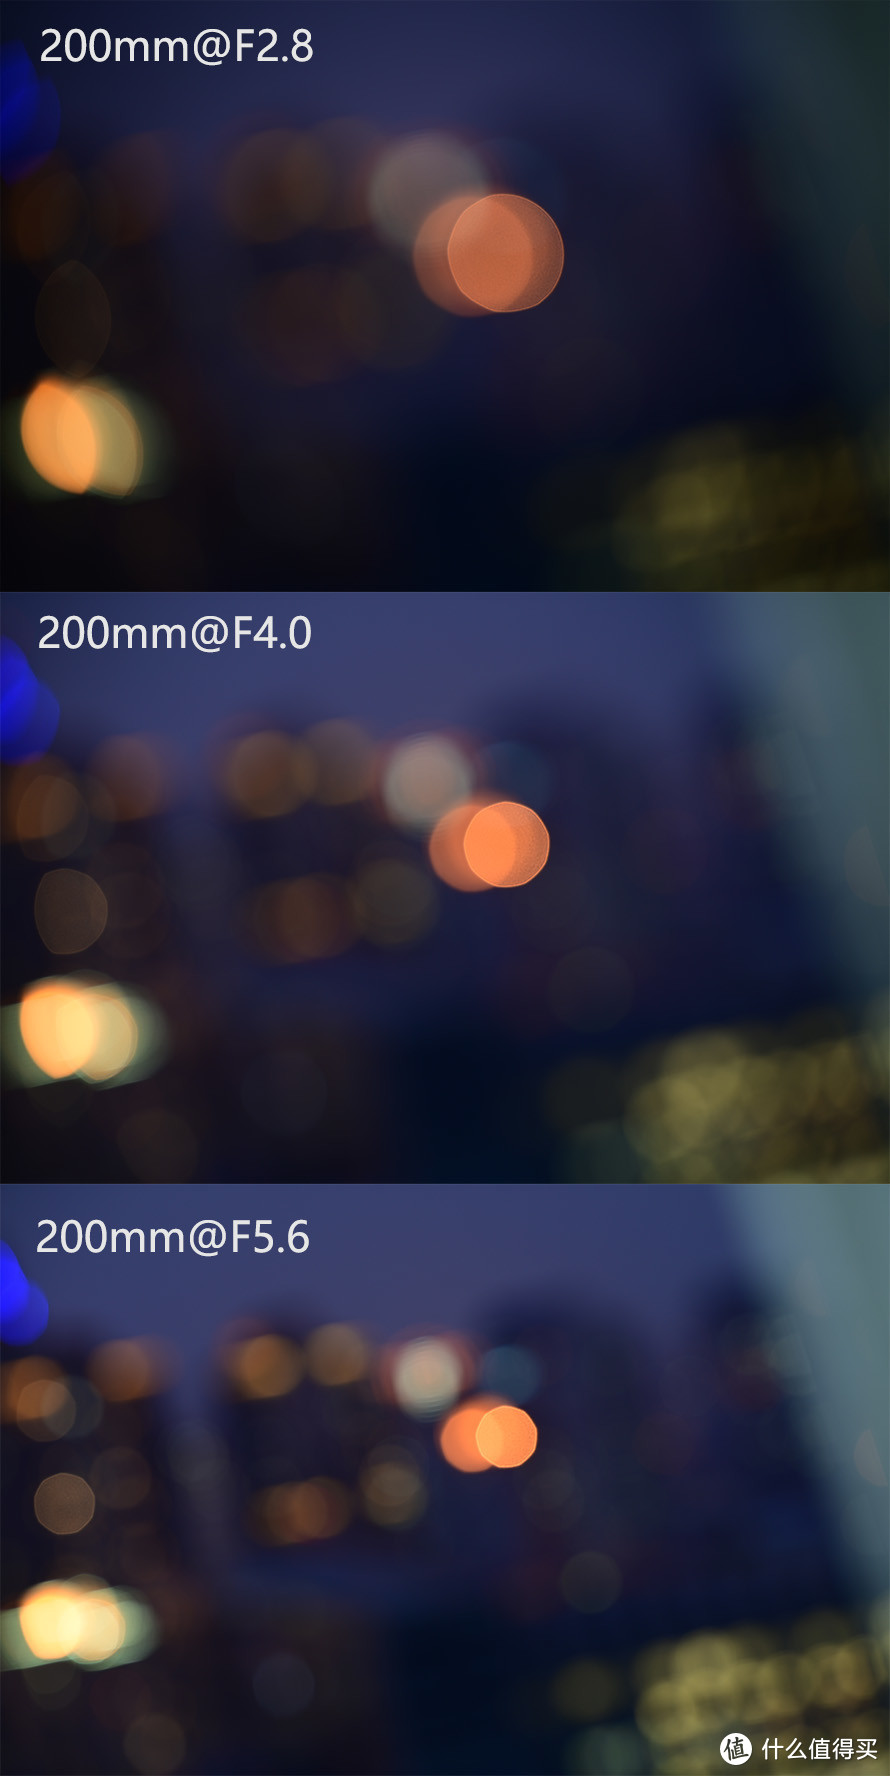 尼康Z 70-200mm f/2.8 VR S评测：再刷720镜头新纪录